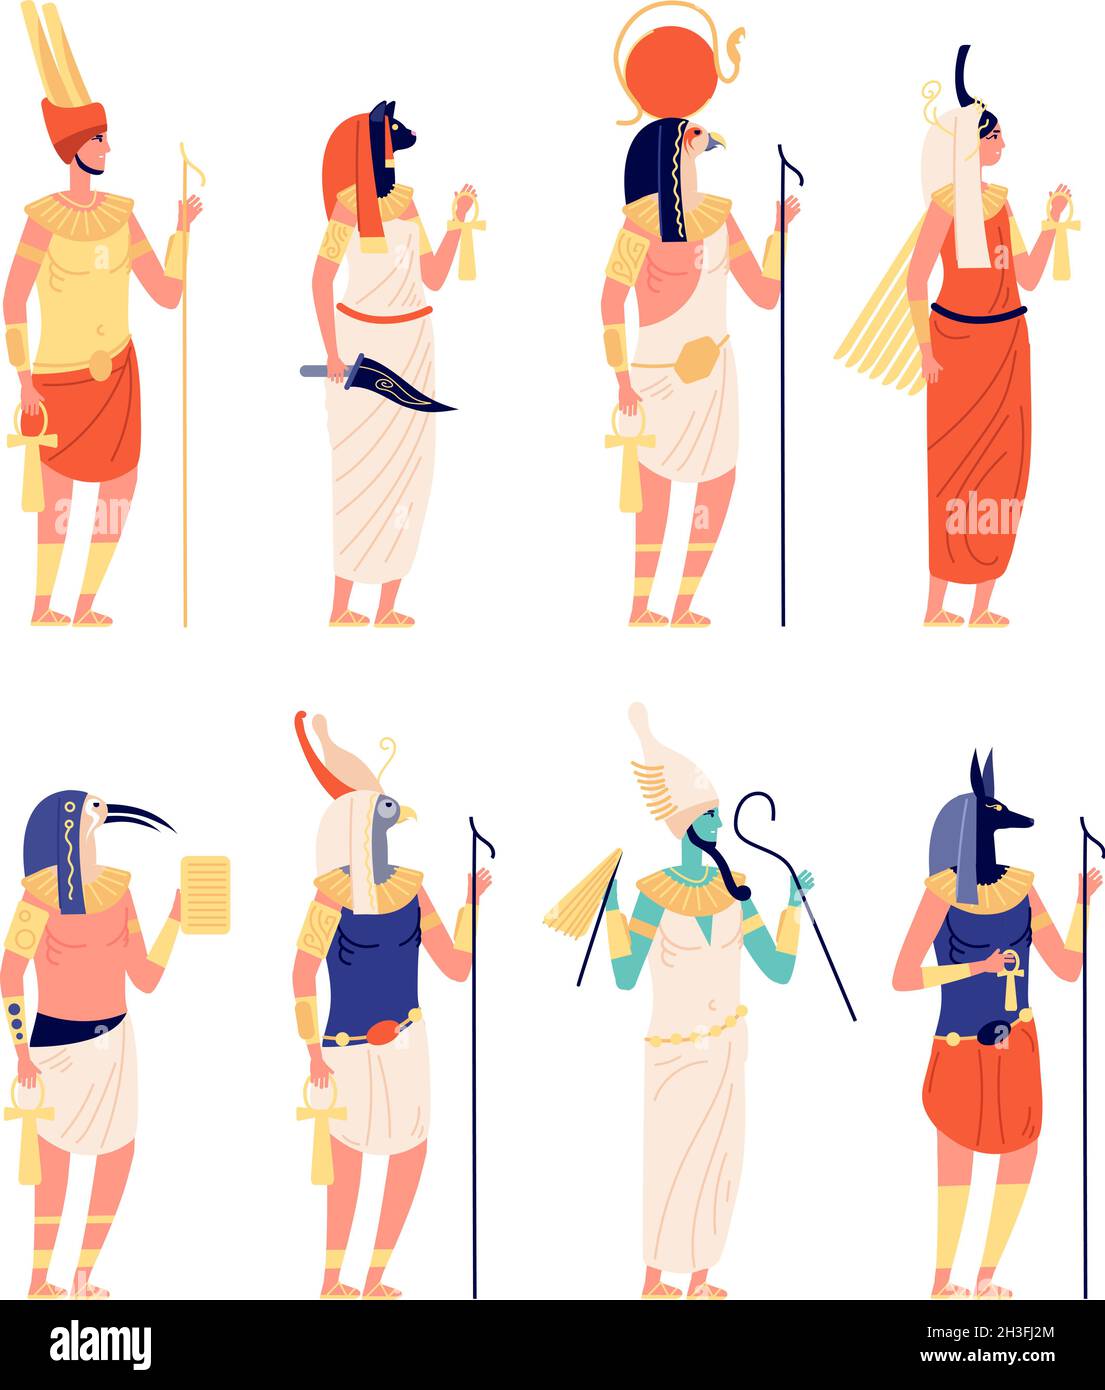 Personnages égyptiens.Ancien dieu égyptien, ancienne déesse culturelle.Osiris horus statues anubis, dessins animés symboles historiques collection de vecteurs Illustration de Vecteur